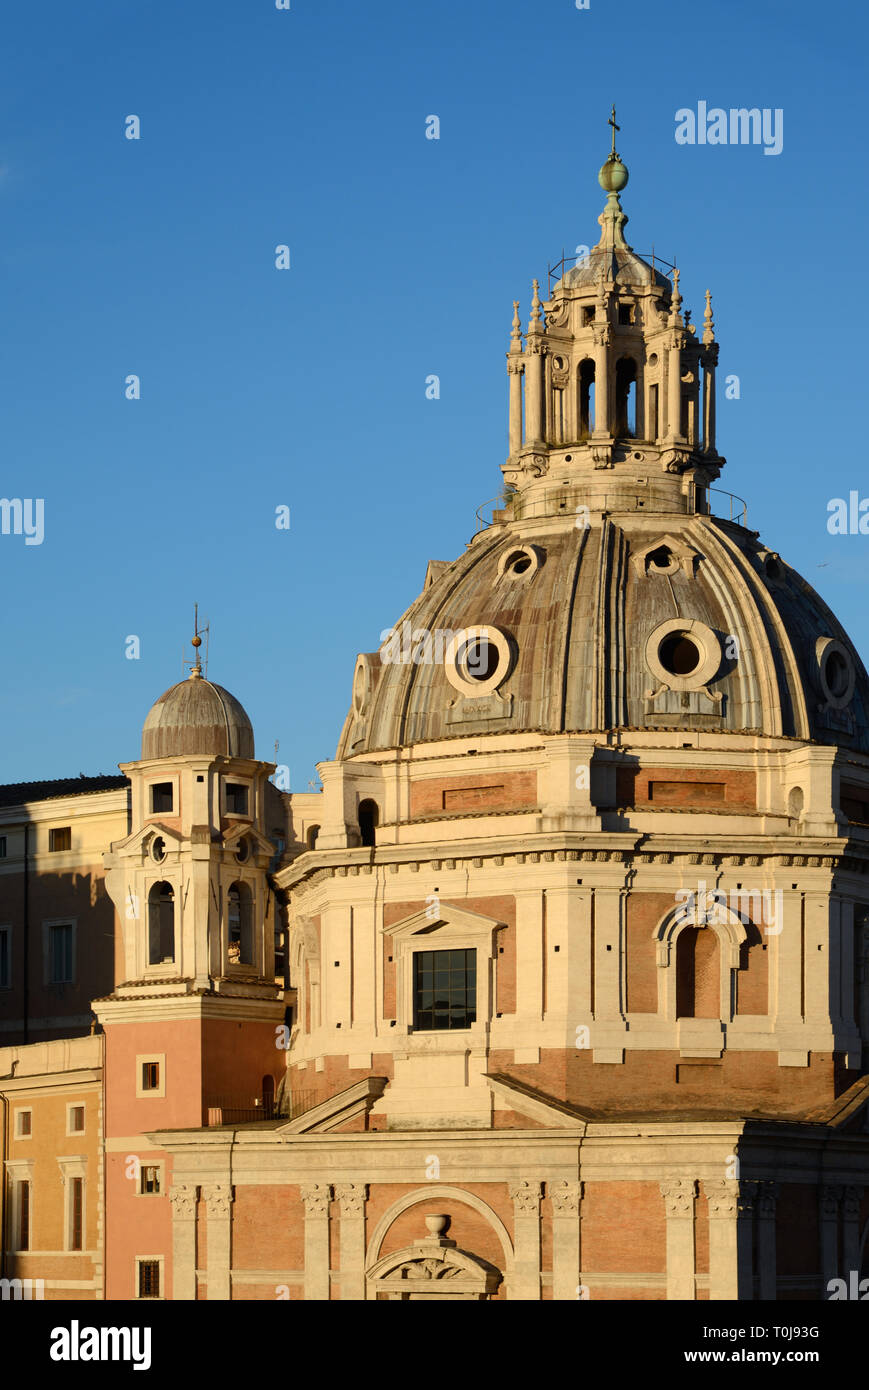 Barocke Fassade, Dach & Laterne Kuppel der Kirche von Santa Maria di Loreto (1507), von Antonio da Sangallo dem Jüngeren, Rom Italien entworfen Stockfoto